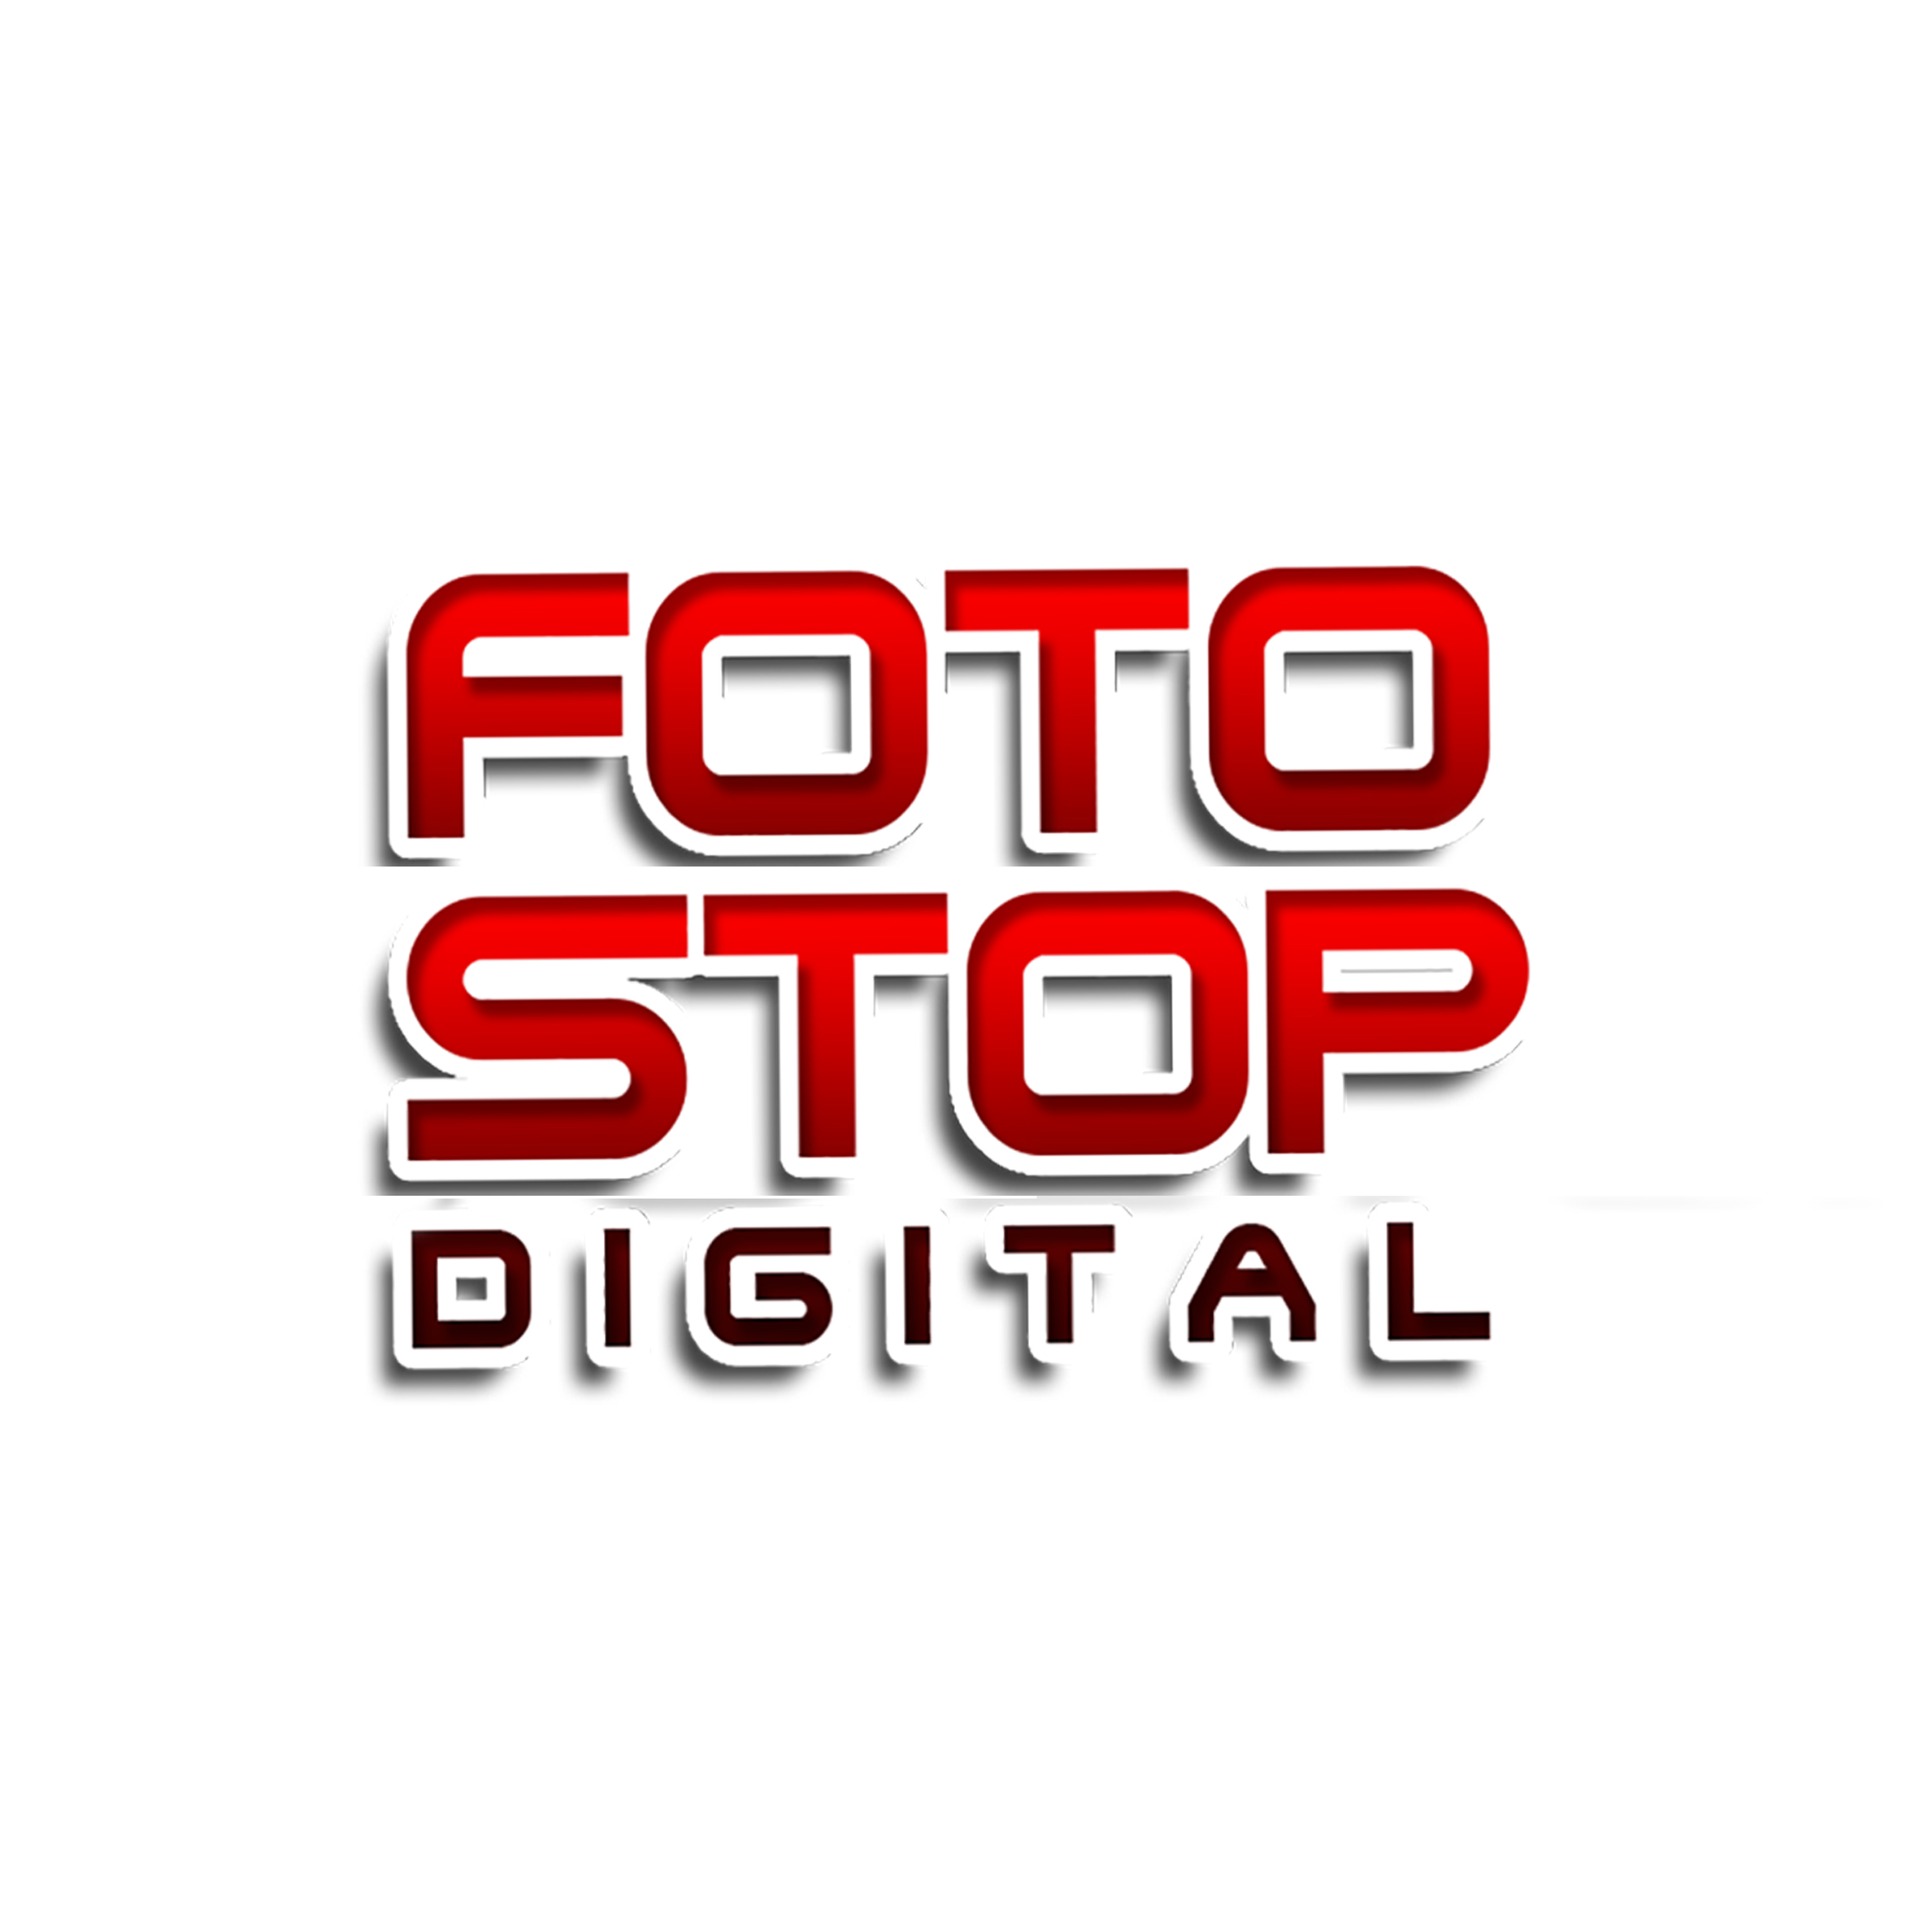 Foto Stop Digital